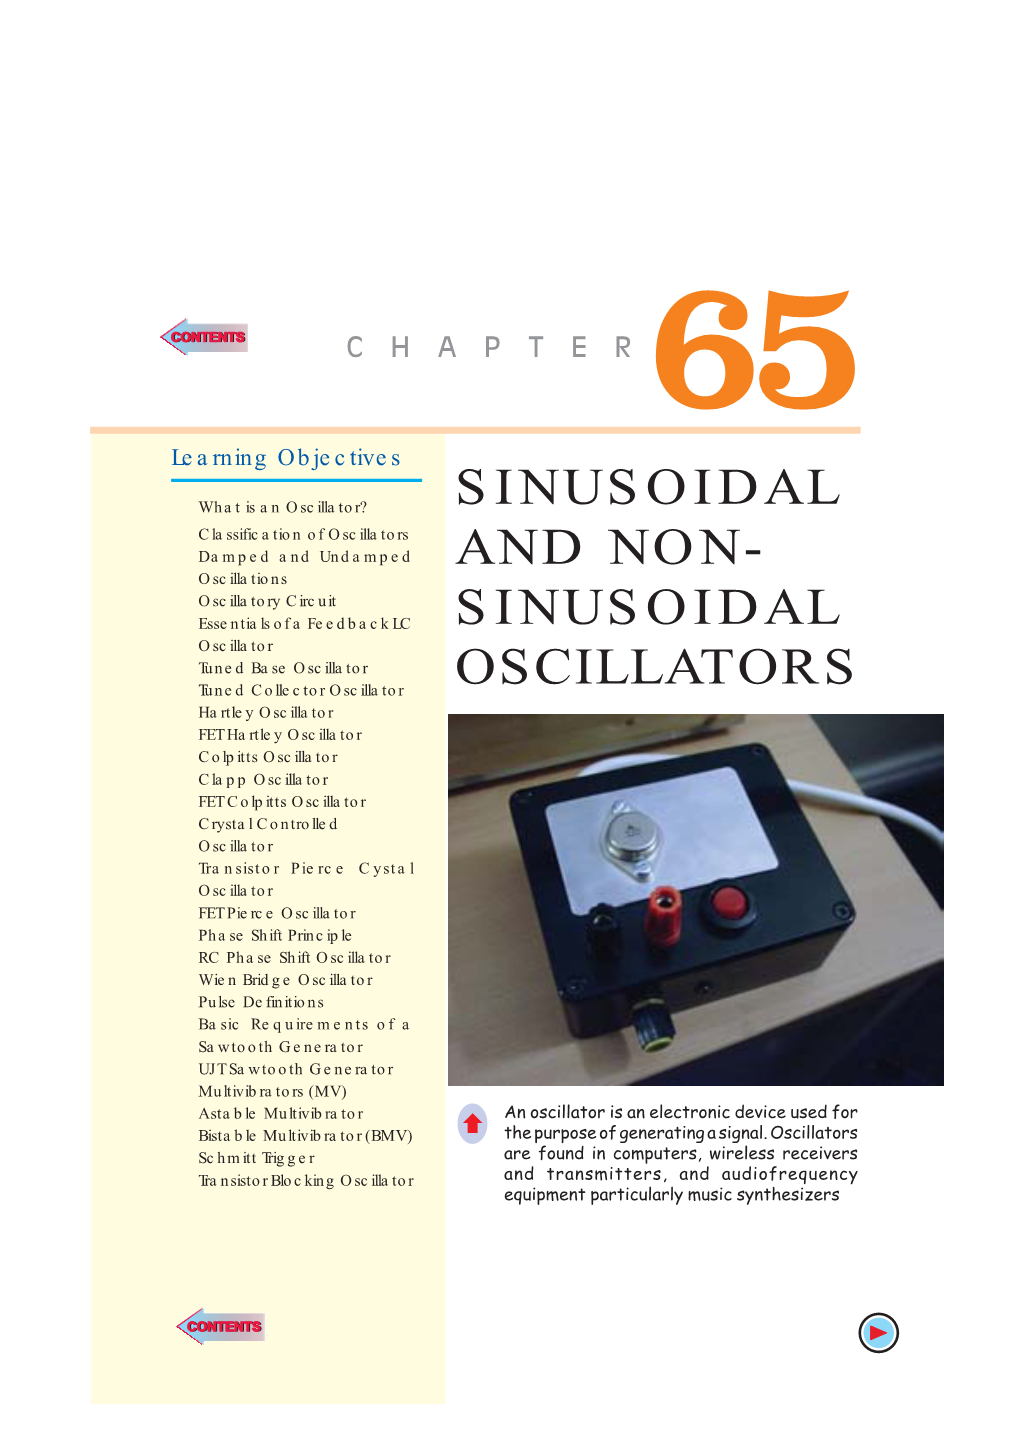 Sinusoidal and Non- Sinusoidal Oscillators